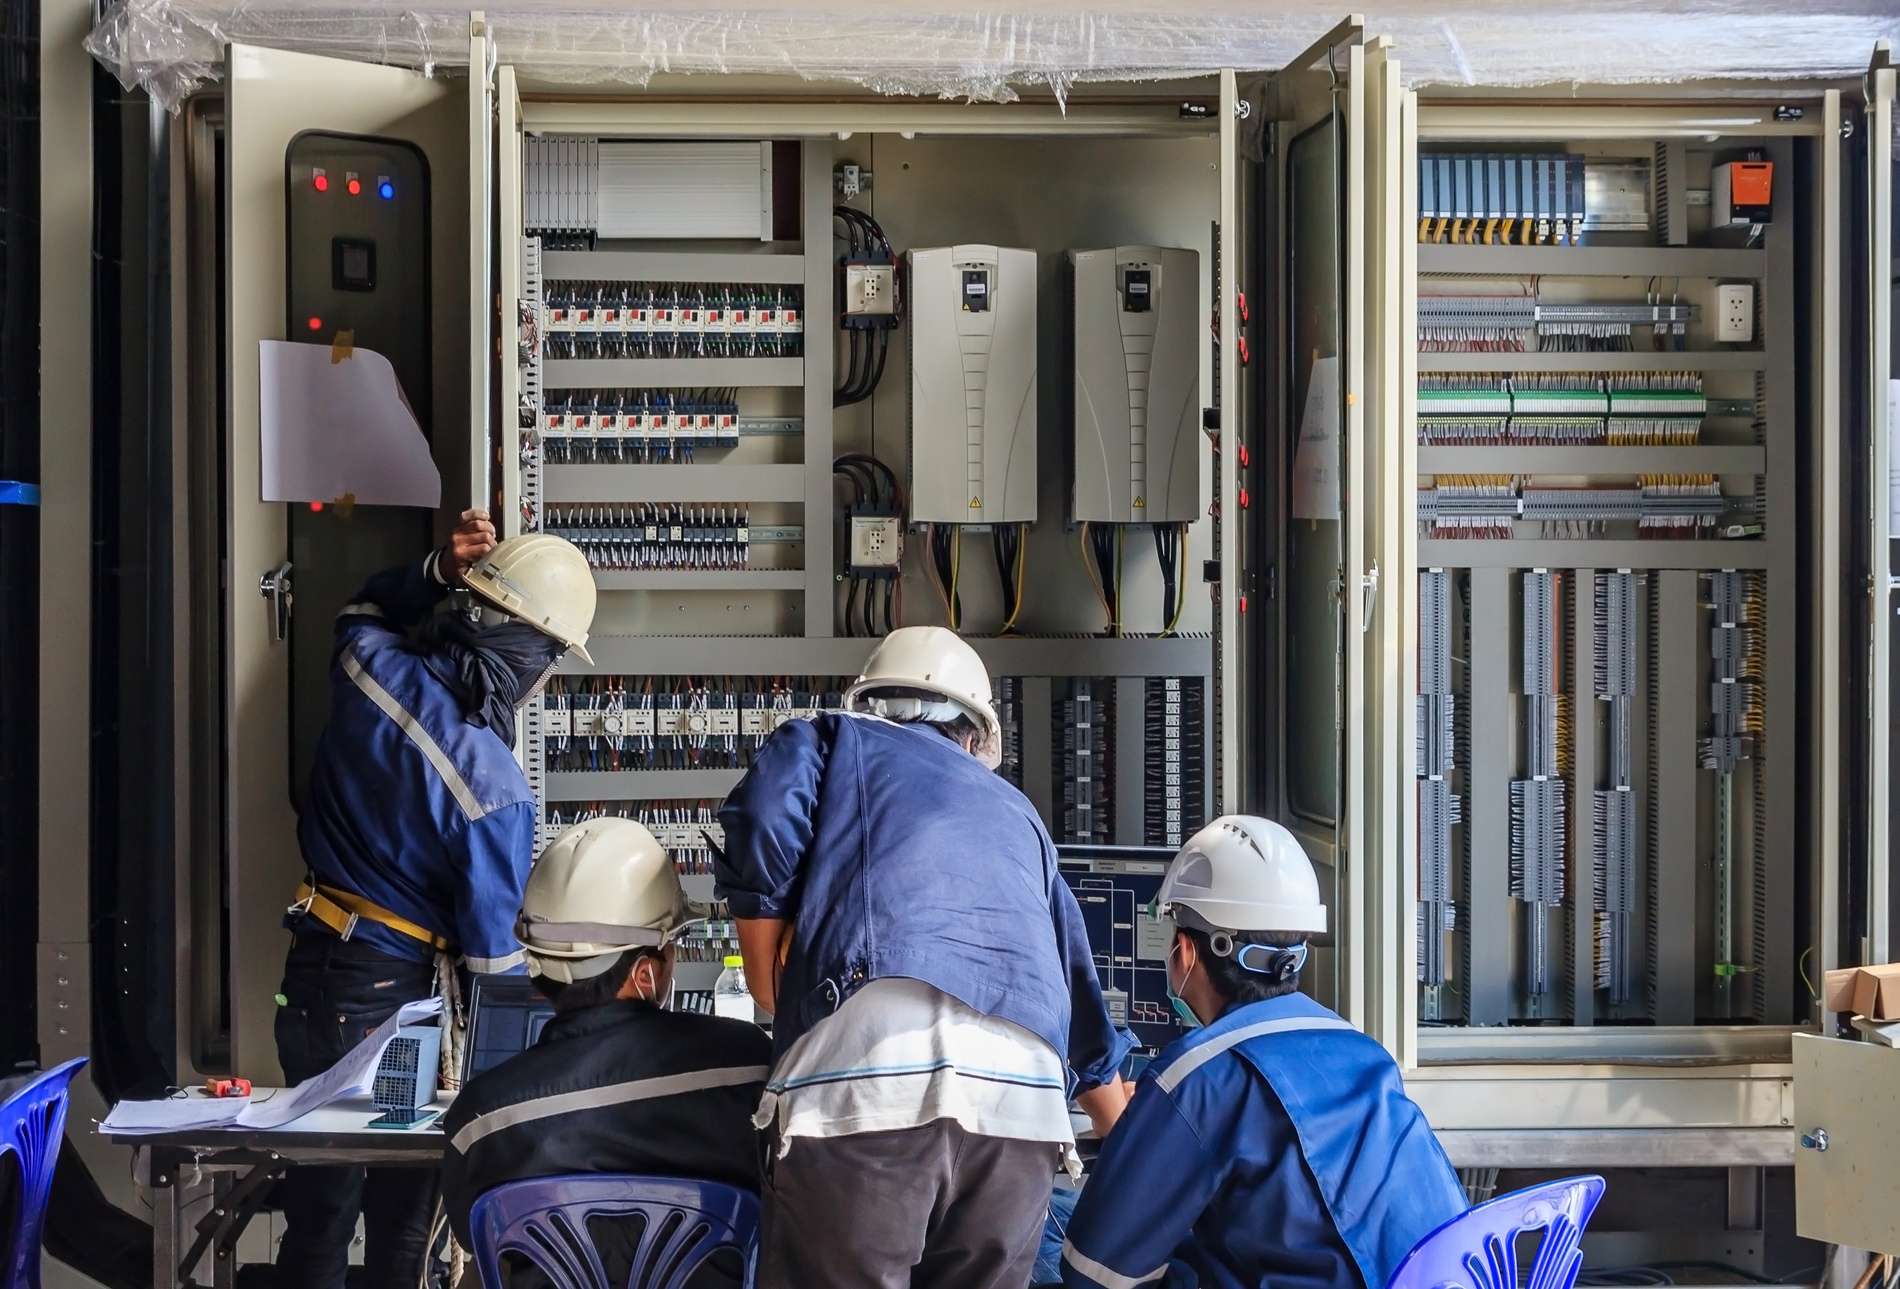 レベルアップの希望を叶える電気工事の求人をしている越谷市の会社